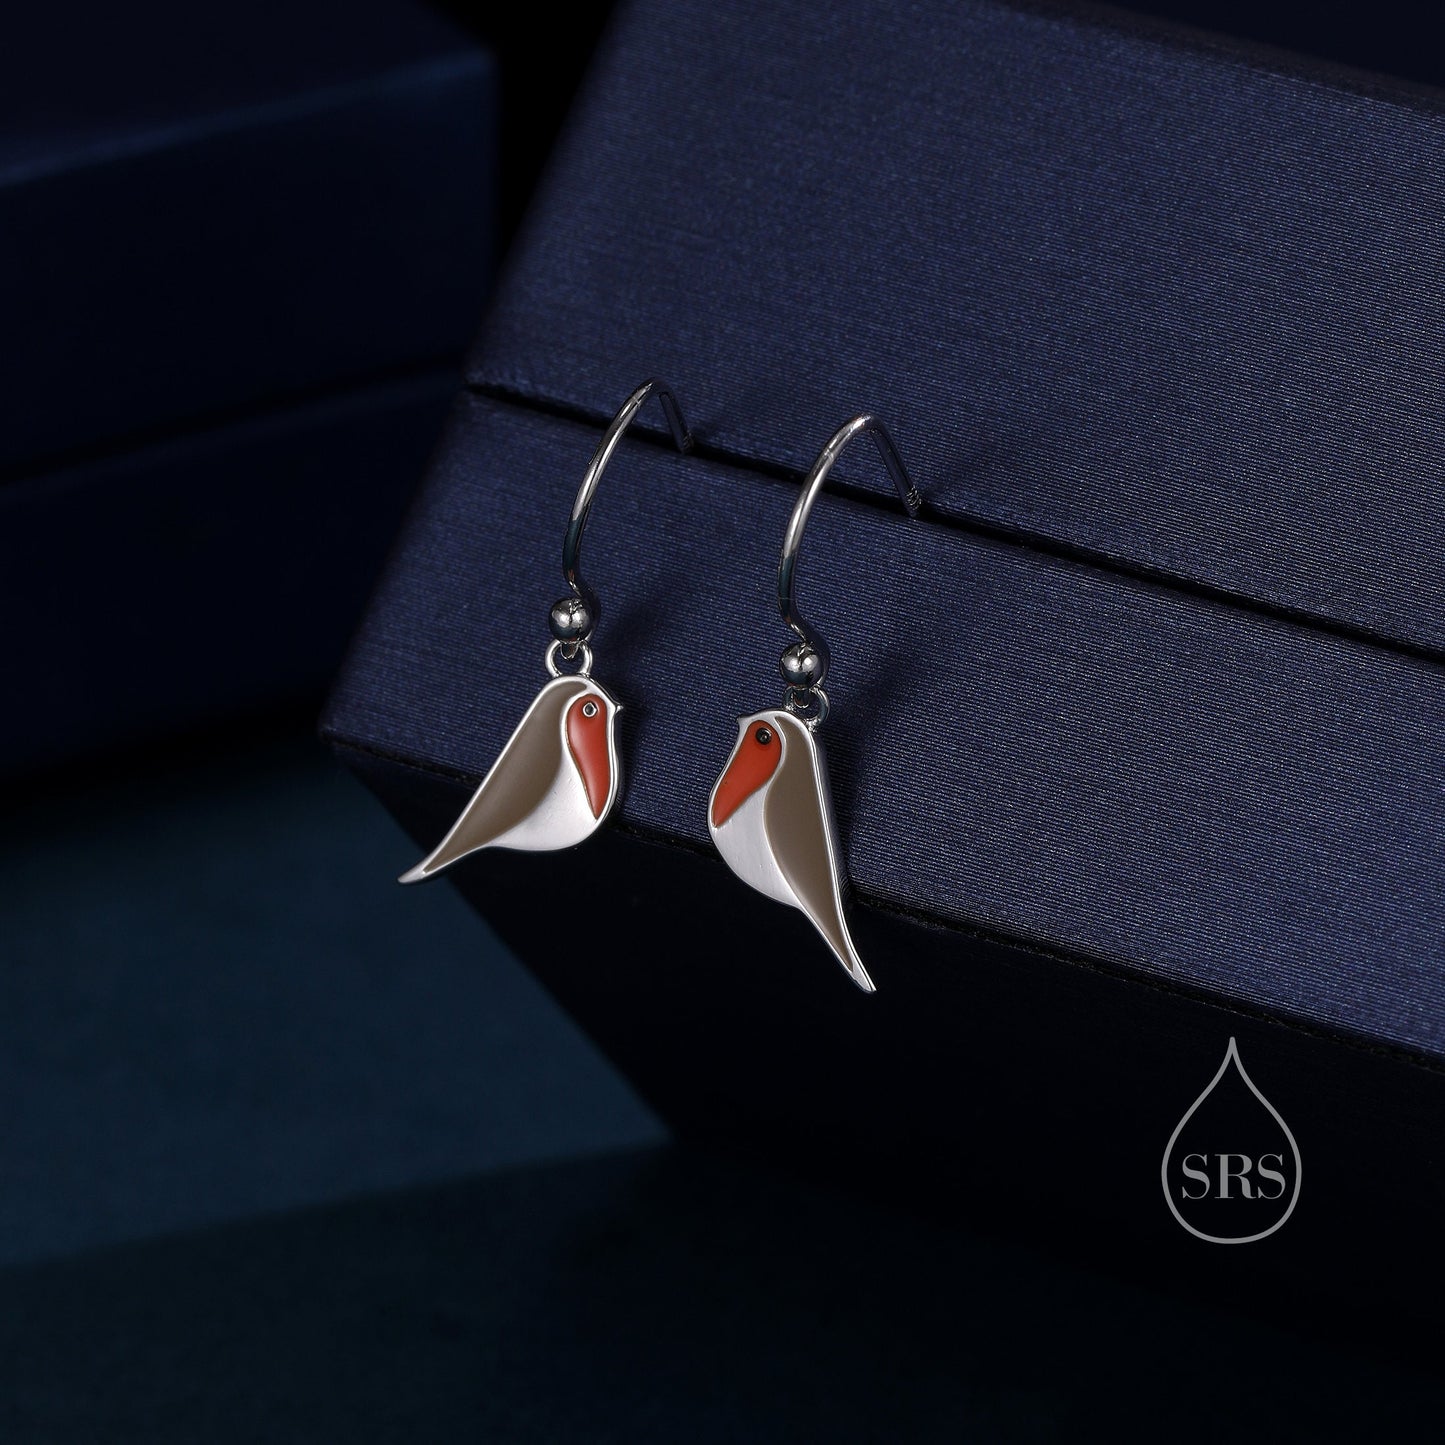 Enamel Robin Bird Drop Hook Earrings in Sterling Silver, Sterling Silver Enamel Robin Earrings, Nature Inspired